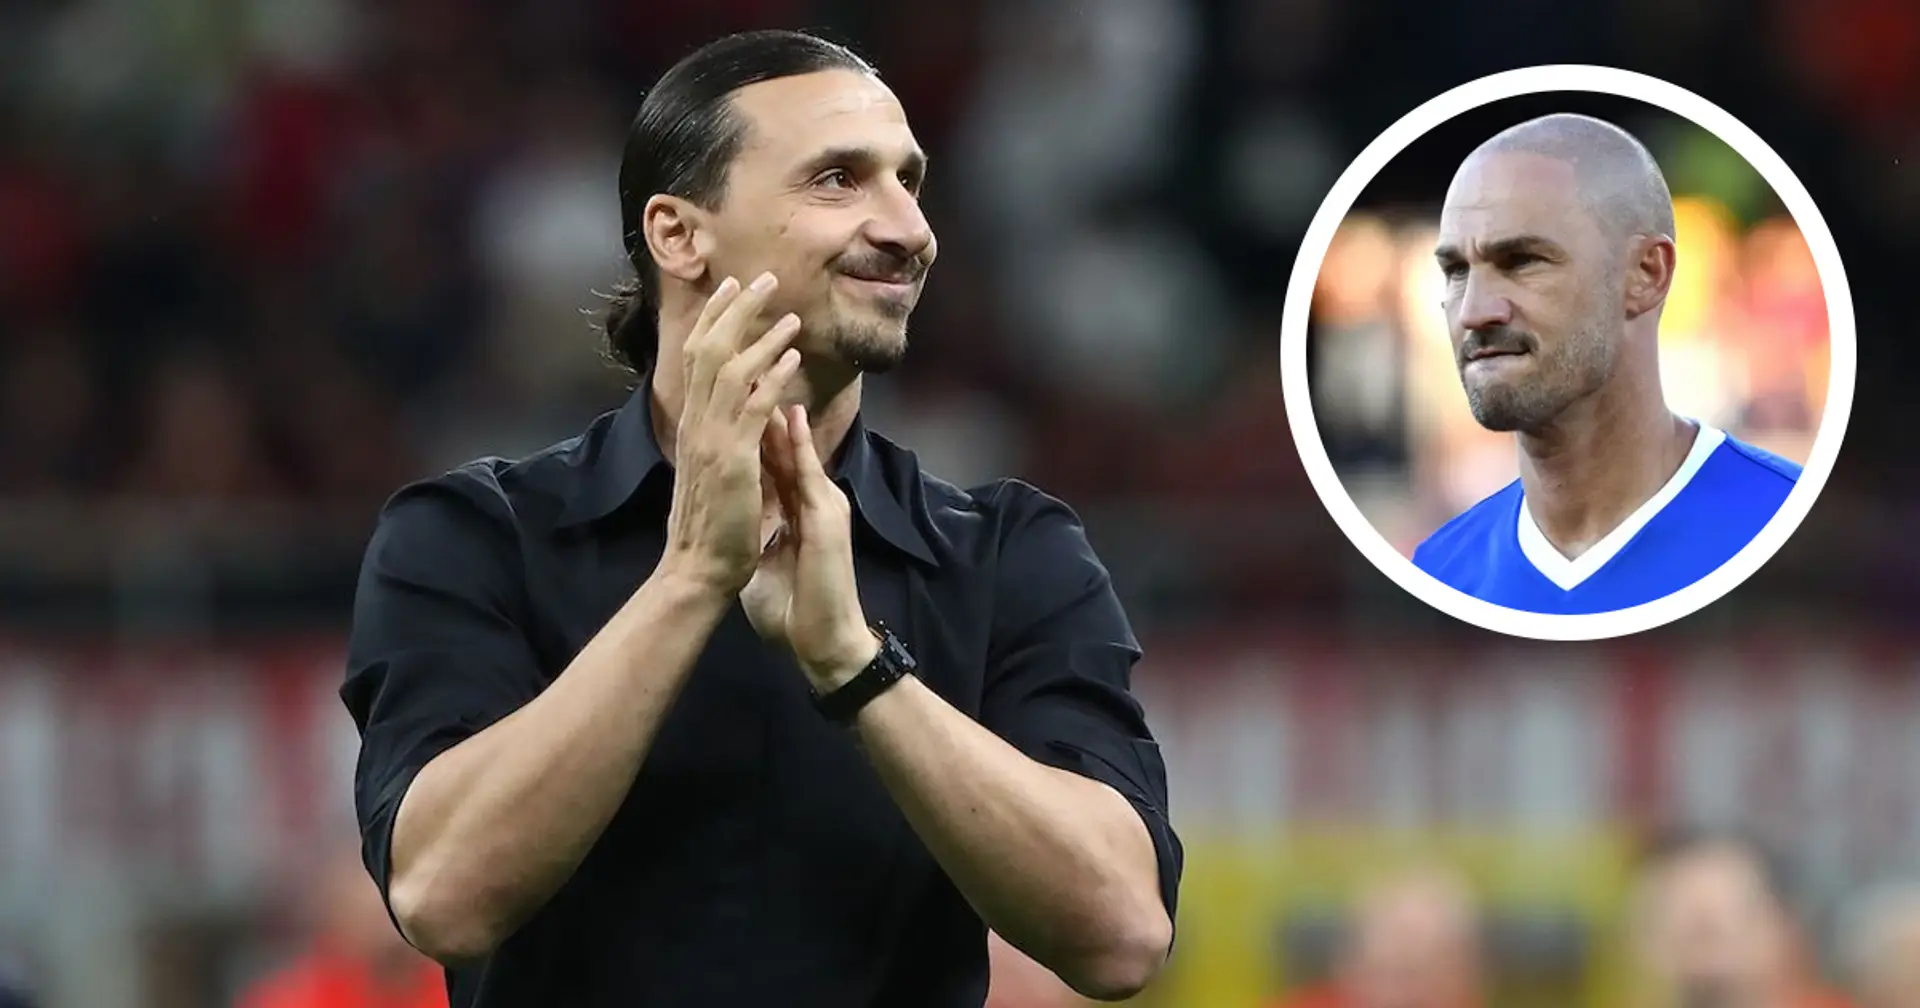 Paolo Cannavaro e il retroscena su Zlatan Ibrahimovic: "Sarebbe stato qualcosa di vagamente 'maradoniano'"